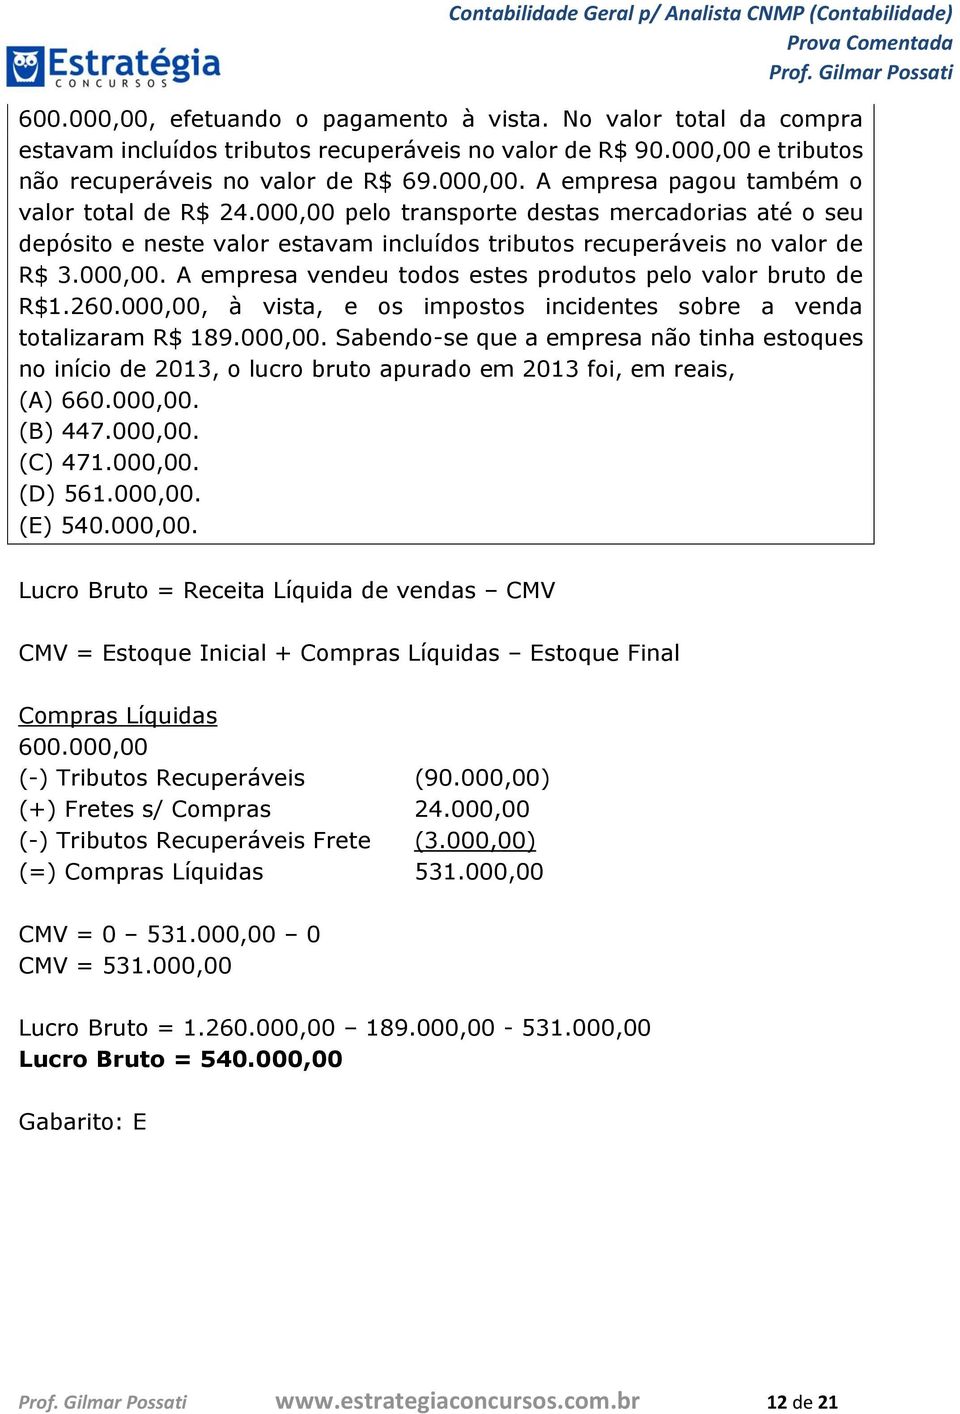 260.000,00, à vista, e os impostos incidentes sobre a venda totalizaram R$ 189.000,00. Sabendo-se que a empresa não tinha estoques no início de 2013, o lucro bruto apurado em 2013 foi, em reais, (A) 660.